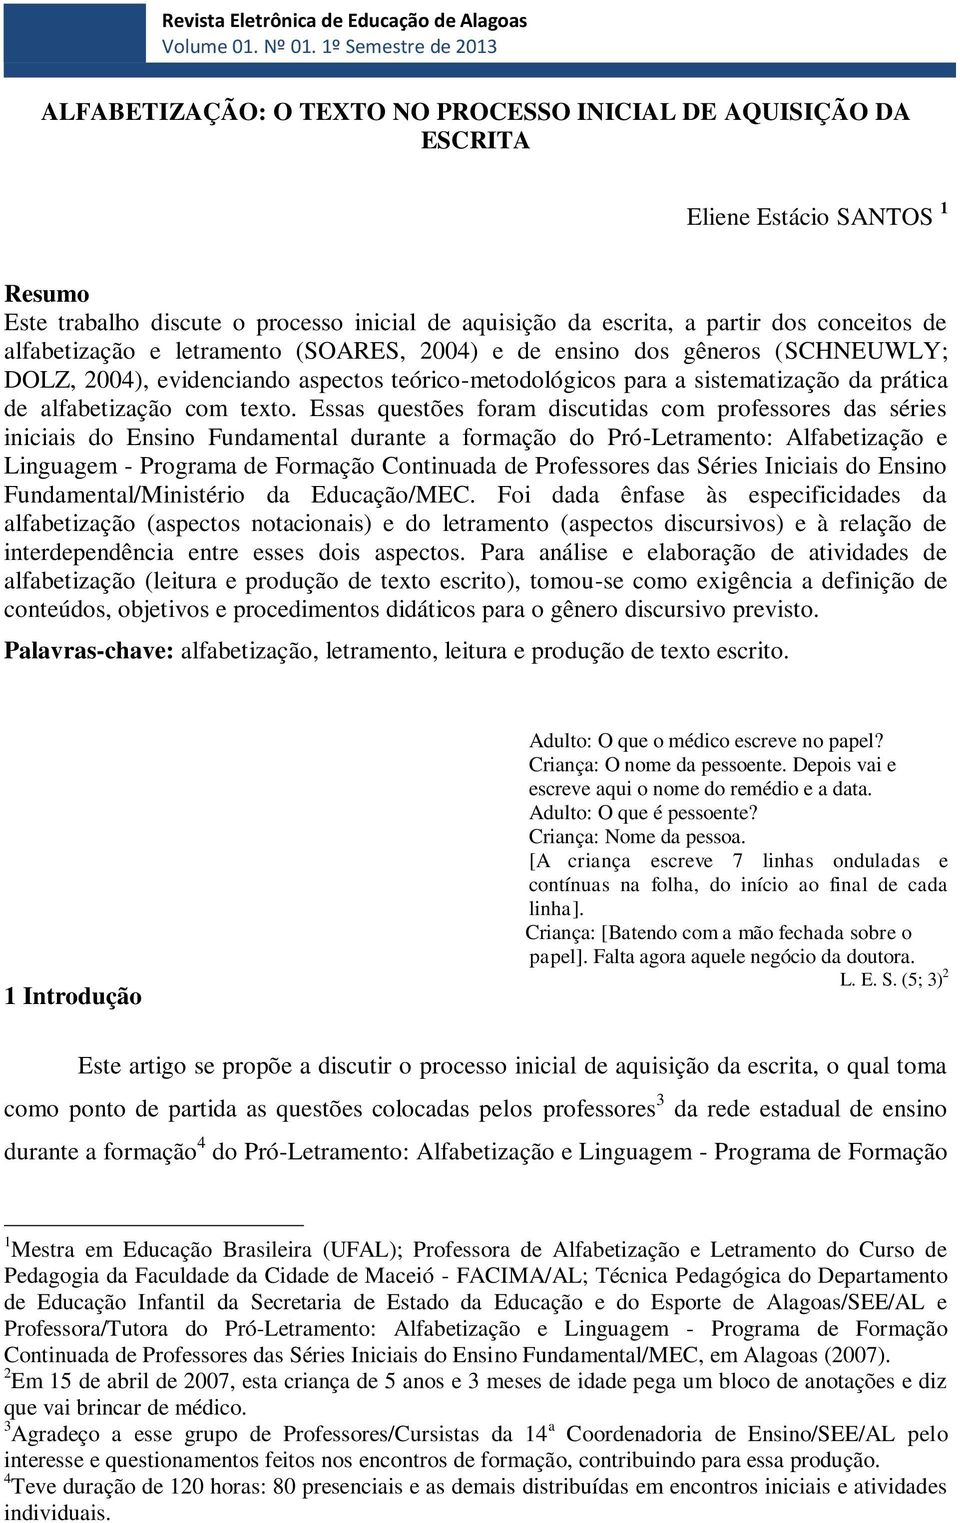 conceitos de alfabetização e letramento (SOARES, 2004) e de ensino dos gêneros (SCHNEUWLY; DOLZ, 2004), evidenciando aspectos teórico-metodológicos para a sistematização da prática de alfabetização